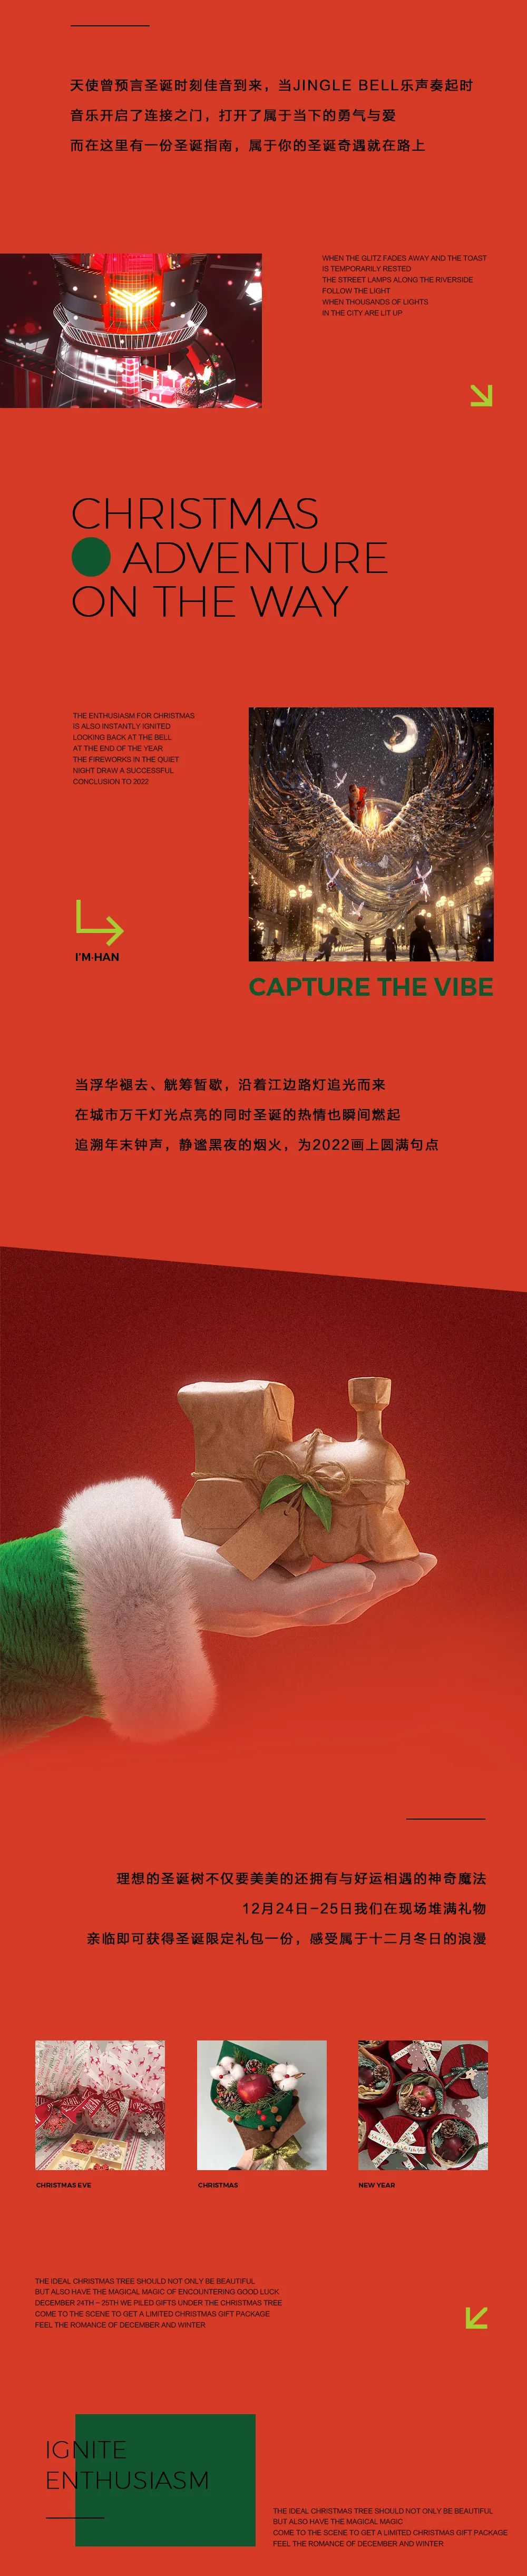 12.24-25 | 这里有一份圣诞指南，属于你的圣诞奇遇就在路上！-武汉ImHan酒吧/I AM HAN night station